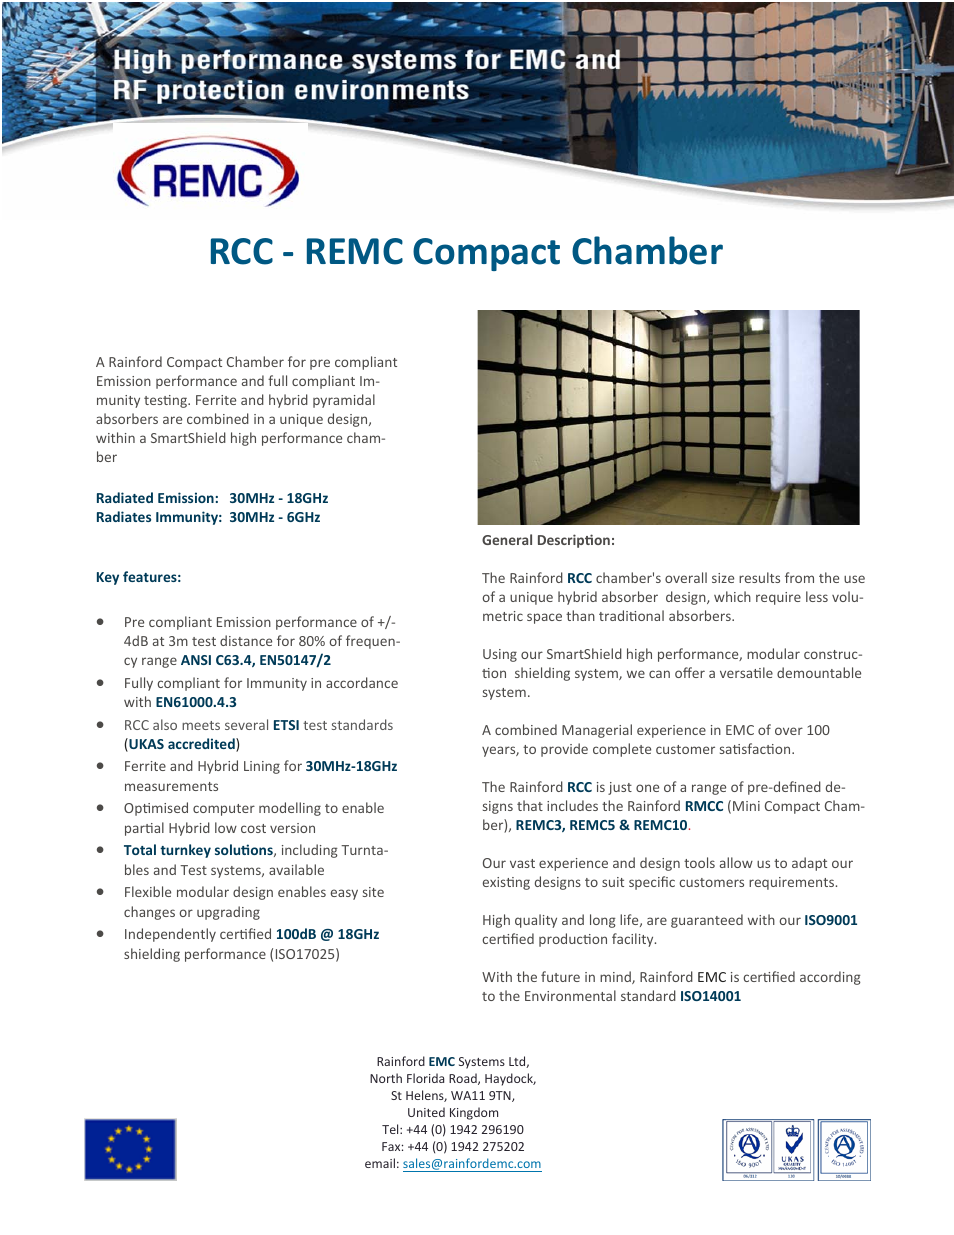 EMC-3C Compact Chamber